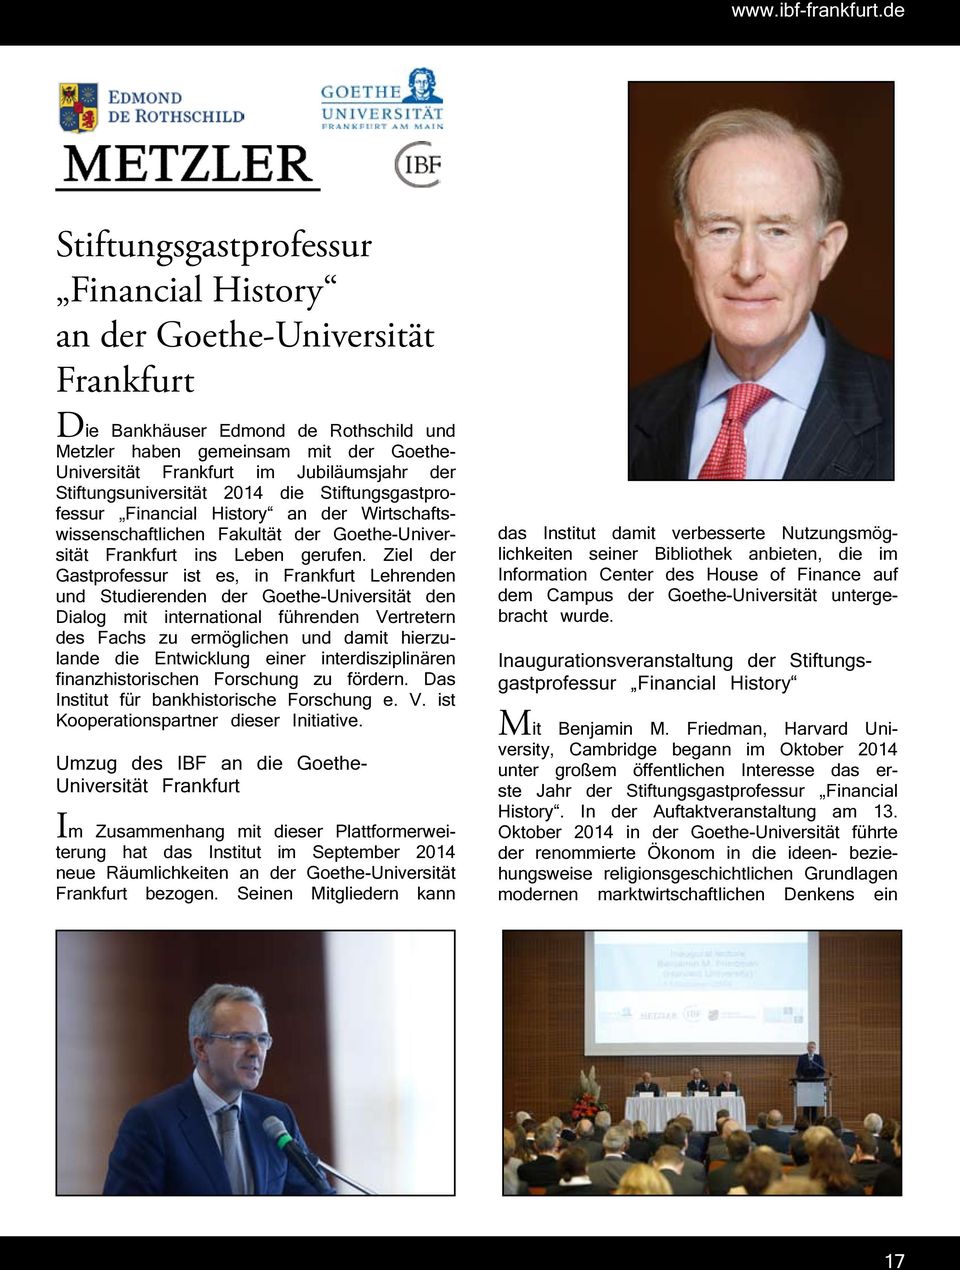 der Stiftungsuniversität 2014 die Stiftungsgastprofessur Financial History an der Wirtschaftswissenschaftlichen Fakultät der Goethe-Universität Frankfurt ins Leben gerufen.